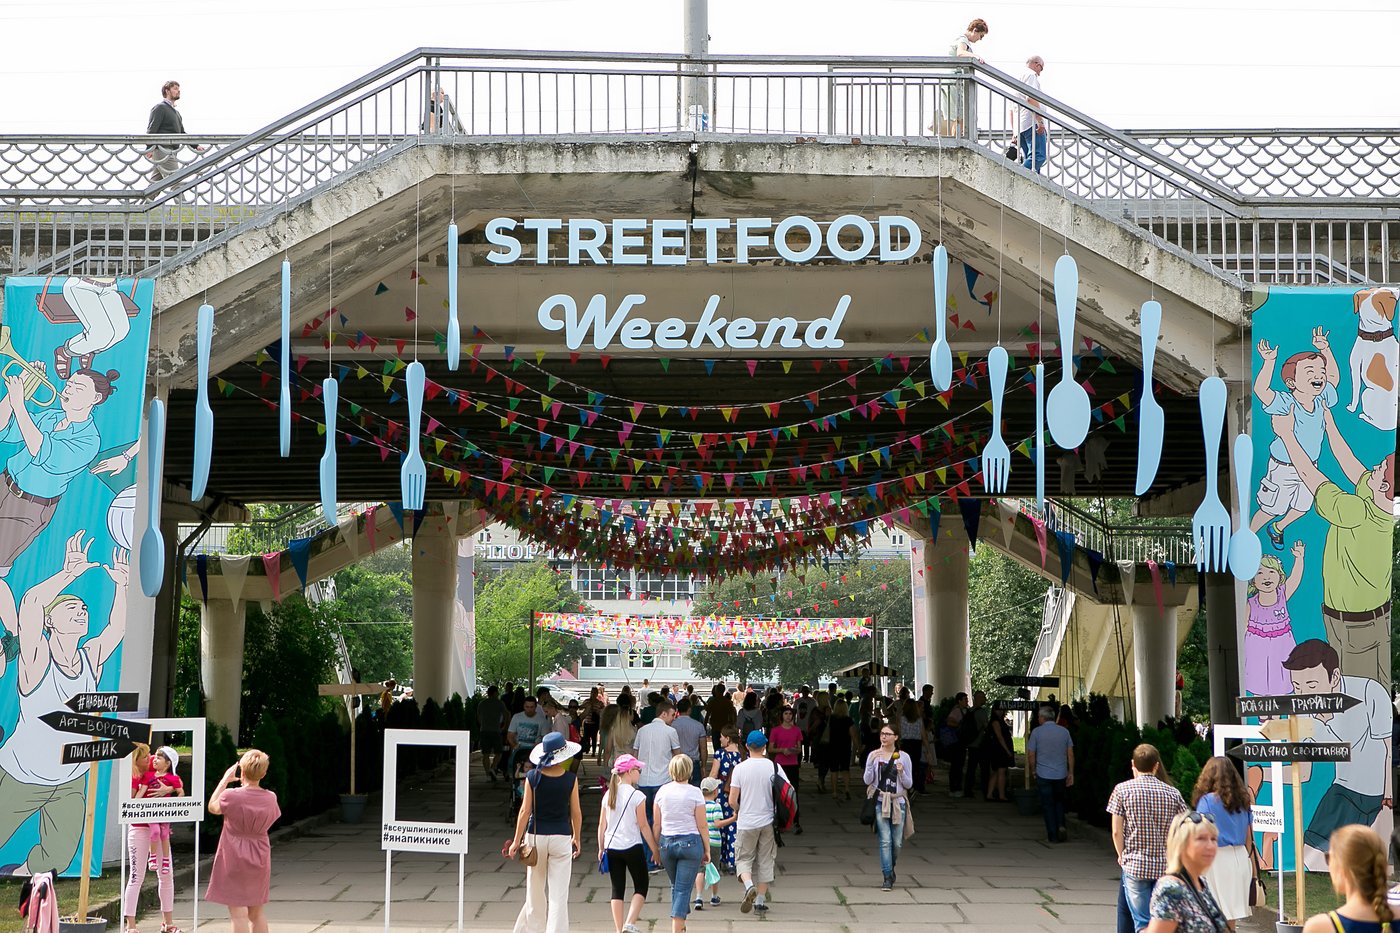 Предлагаем вспомнить крупнейшее мероприятие прошлого года от команды KSF: 5 причин любить Street Food Weekend